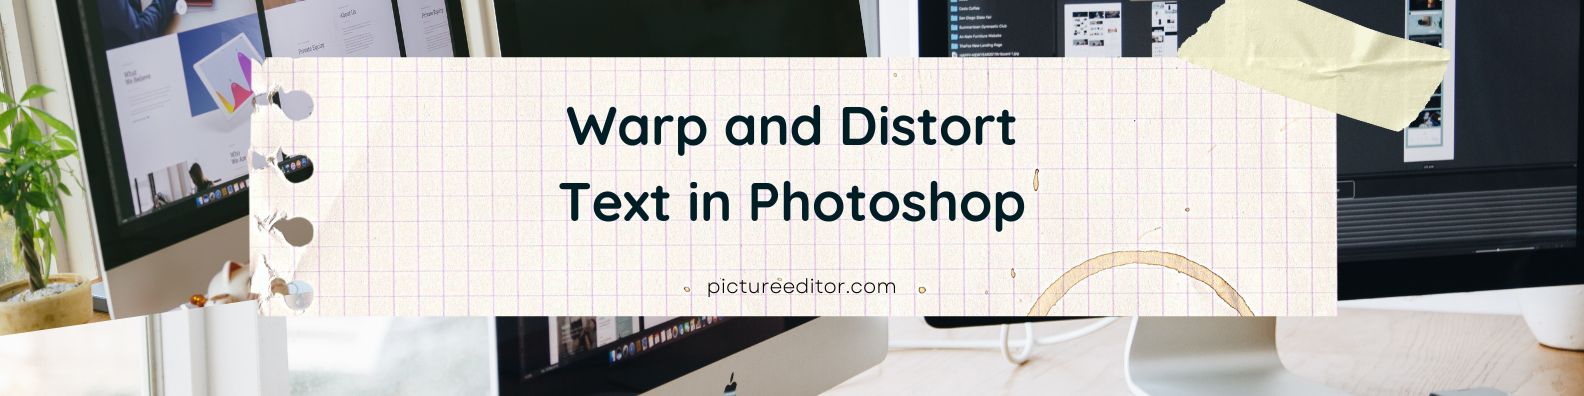 Warp and Distort Text in Photoshop